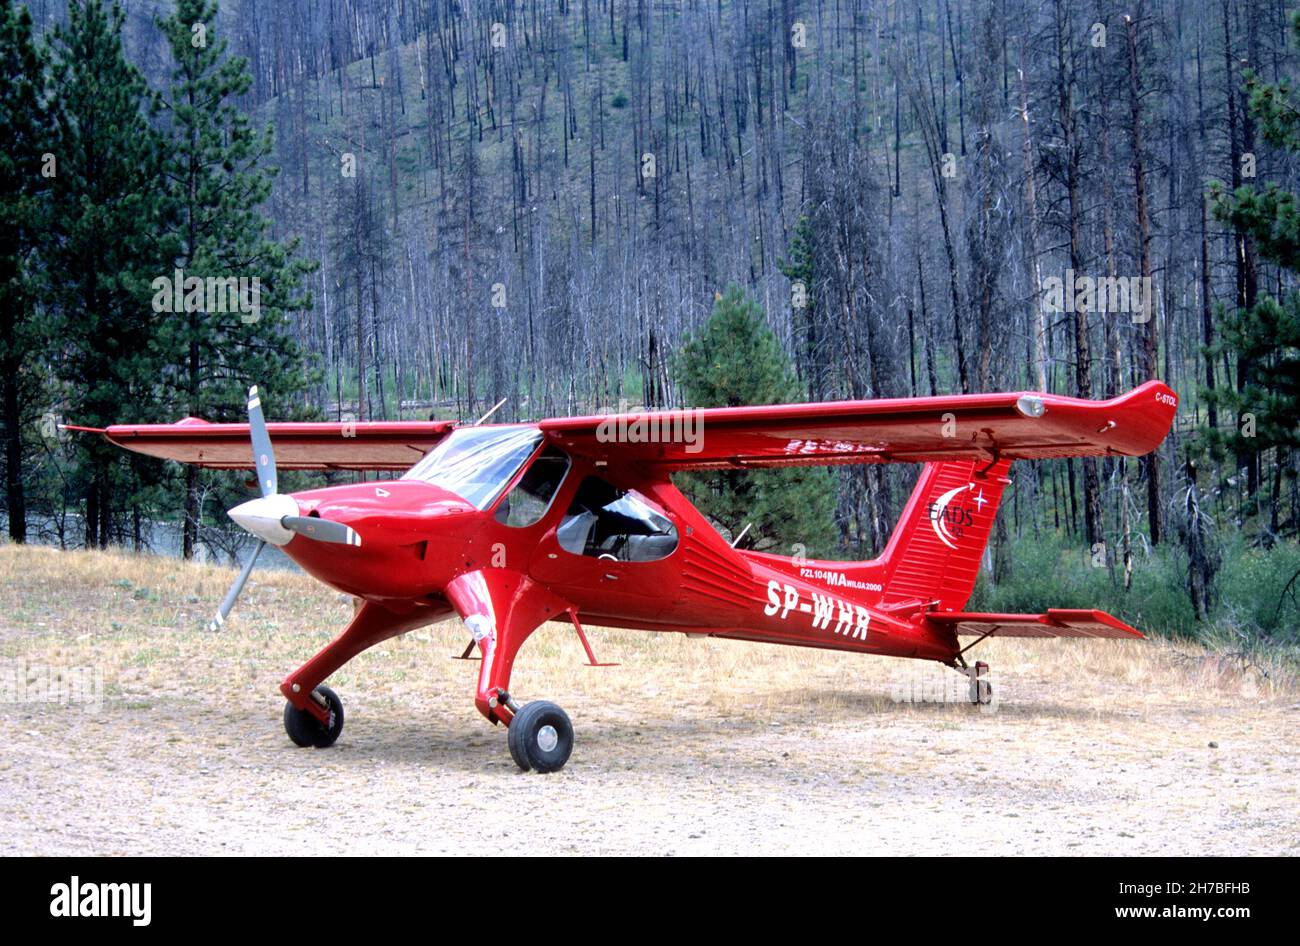 PZL-104 Wilga aircraft parked at a backcountry airstrip in central Idaho Stock Photo